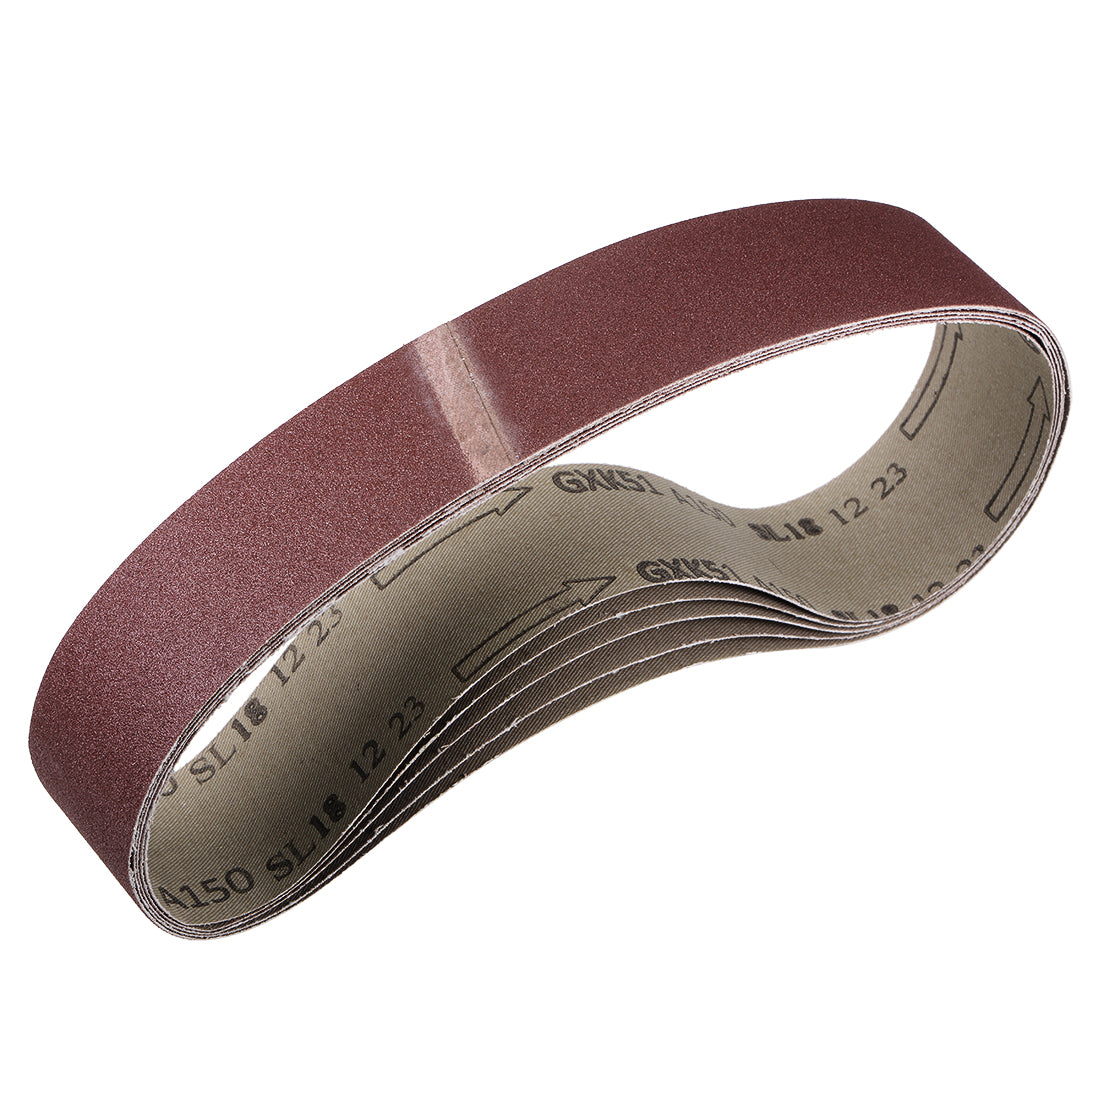 uxcell Uxcell 2 x 27 Inch Sanding Belt 150 Grit Sand Belts for Belt Sander 5pcs